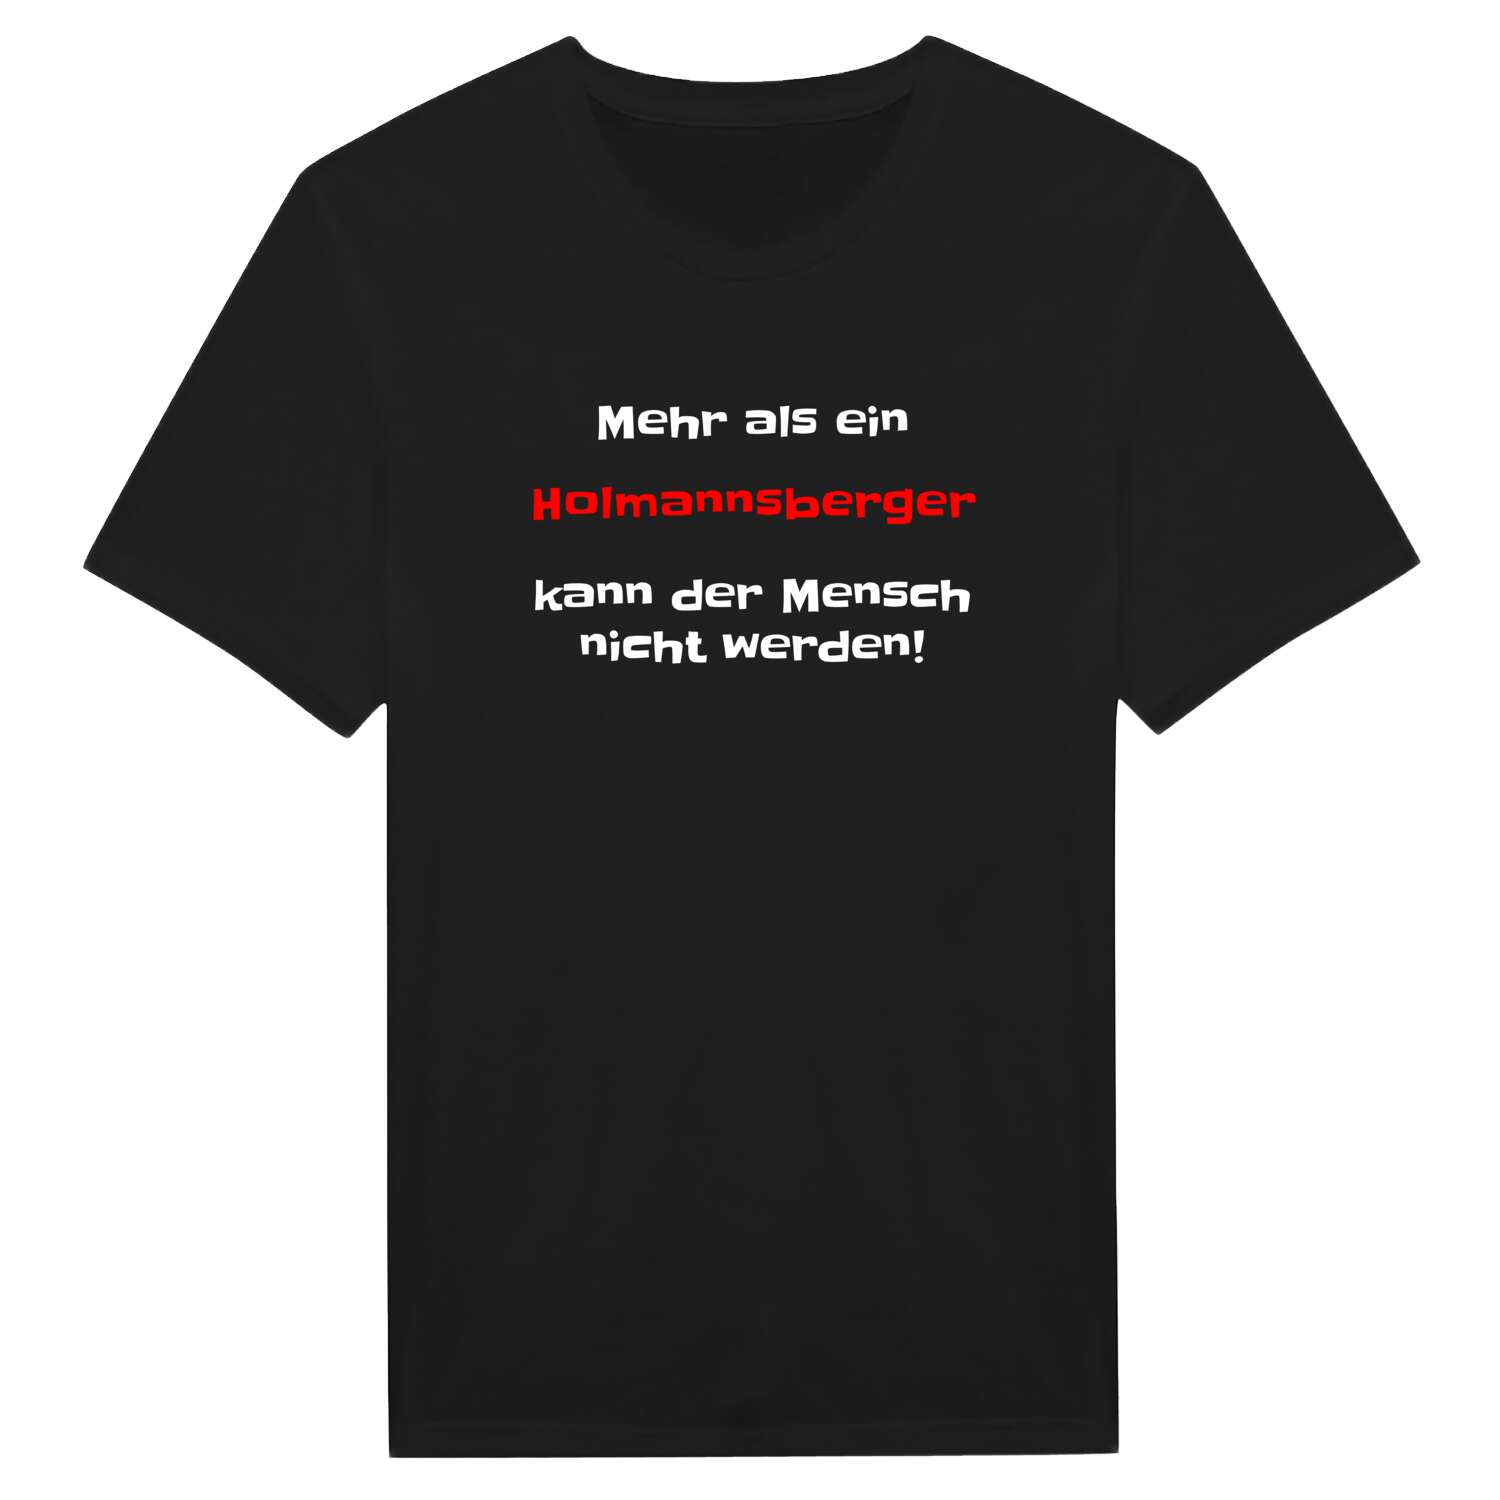 Holmannsberg T-Shirt »Mehr als ein«